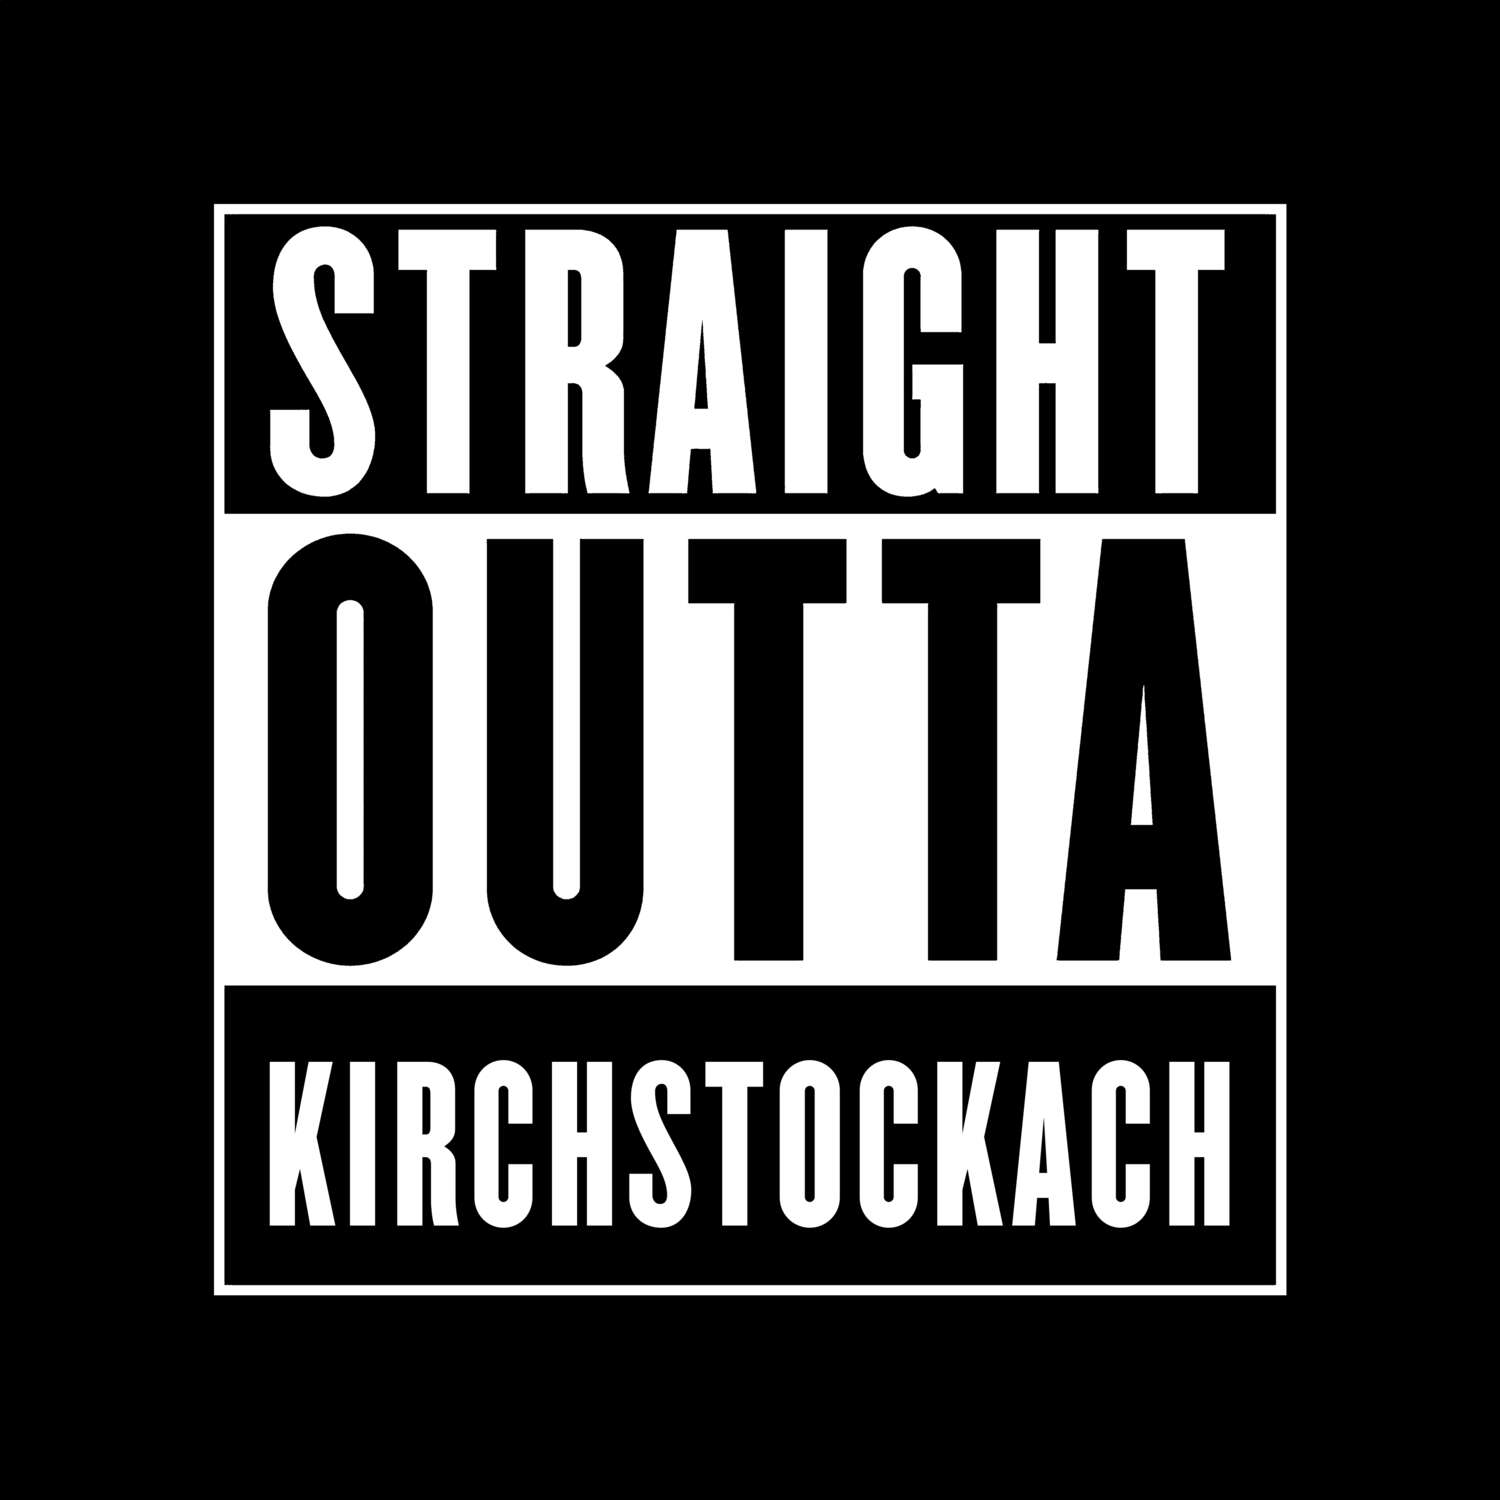 Kirchstockach T-Shirt »Straight Outta«